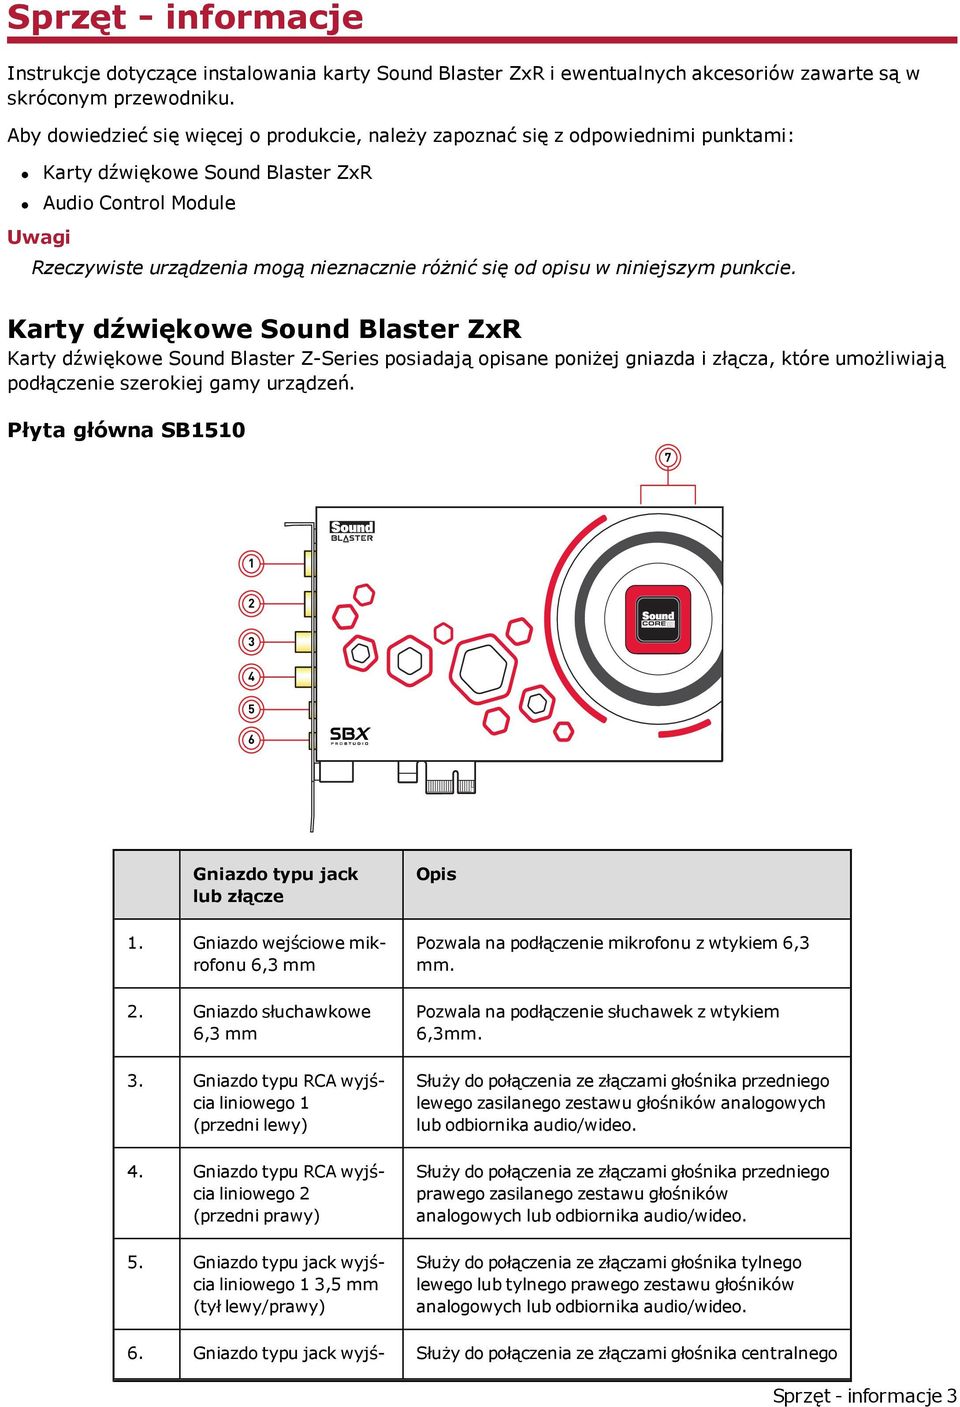 opisu w niniejszym punkcie. Karty dźwiękowe Sound Blaster ZxR Karty dźwiękowe Sound Blaster Z-Series posiadają opisane poniżej gniazda i złącza, które umożliwiają podłączenie szerokiej gamy urządzeń.